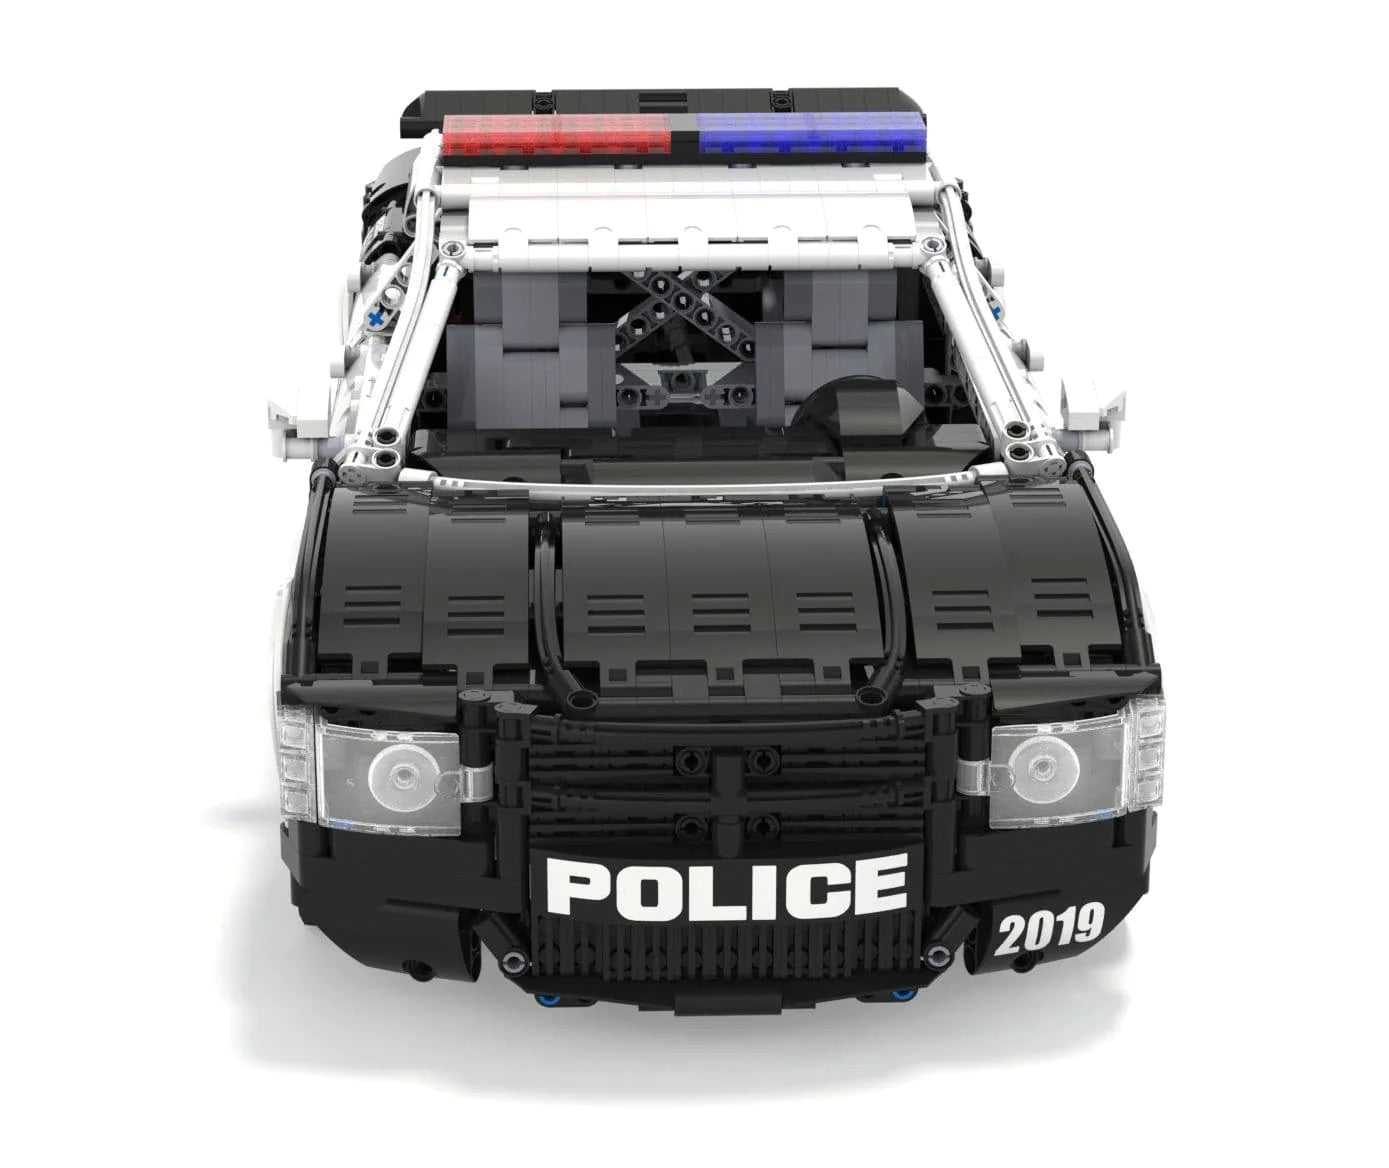 2020 POLICE CAR | 2855PCS